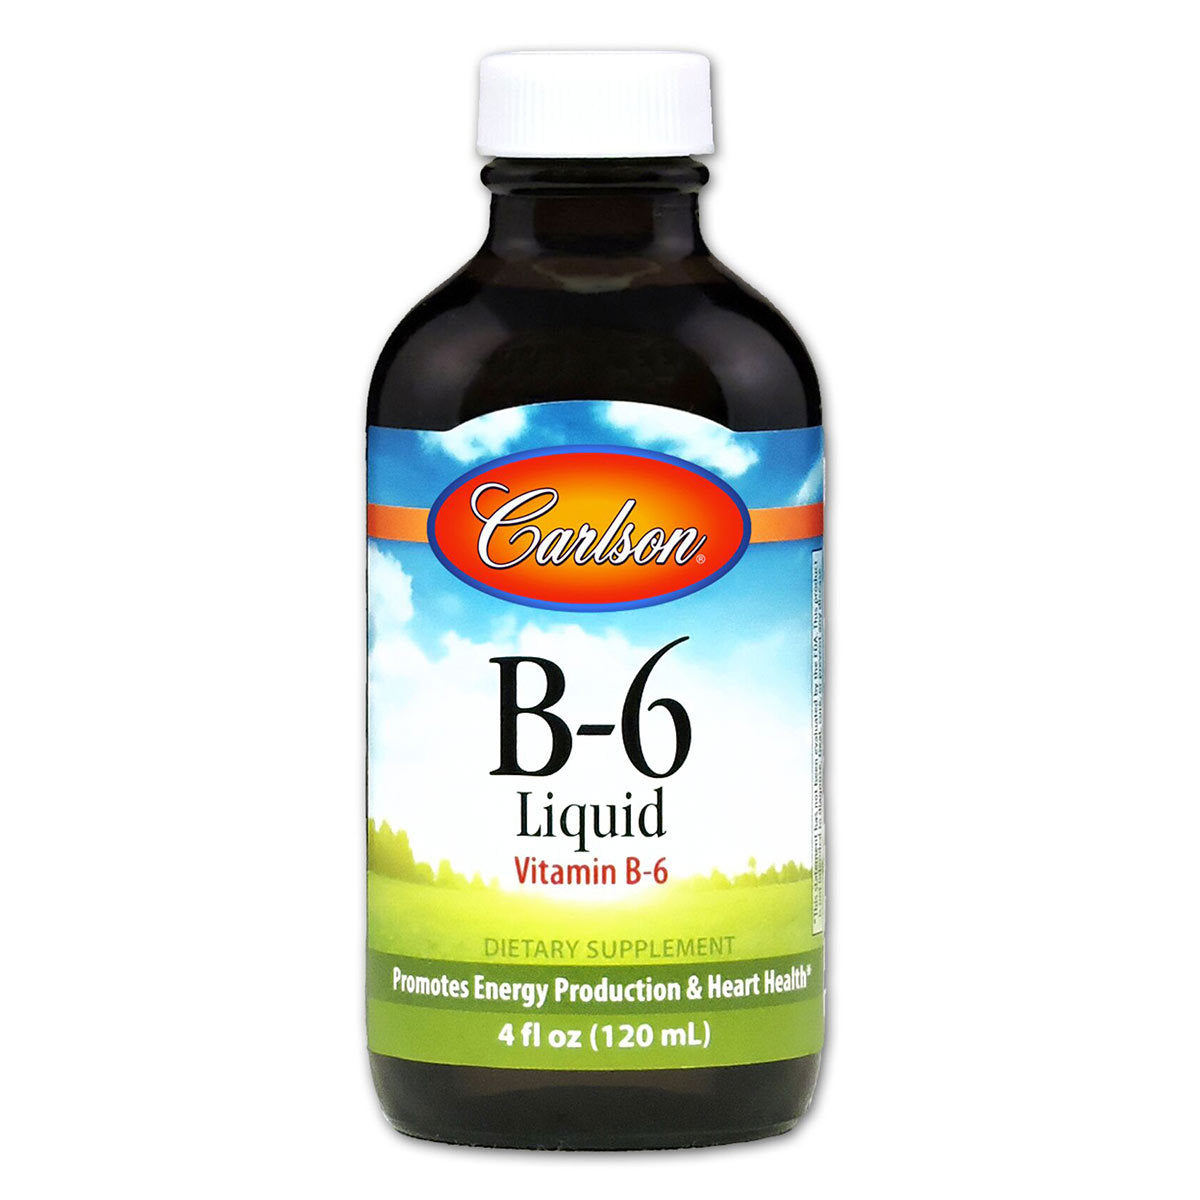 Primary image of Vitamin B6 Liquid